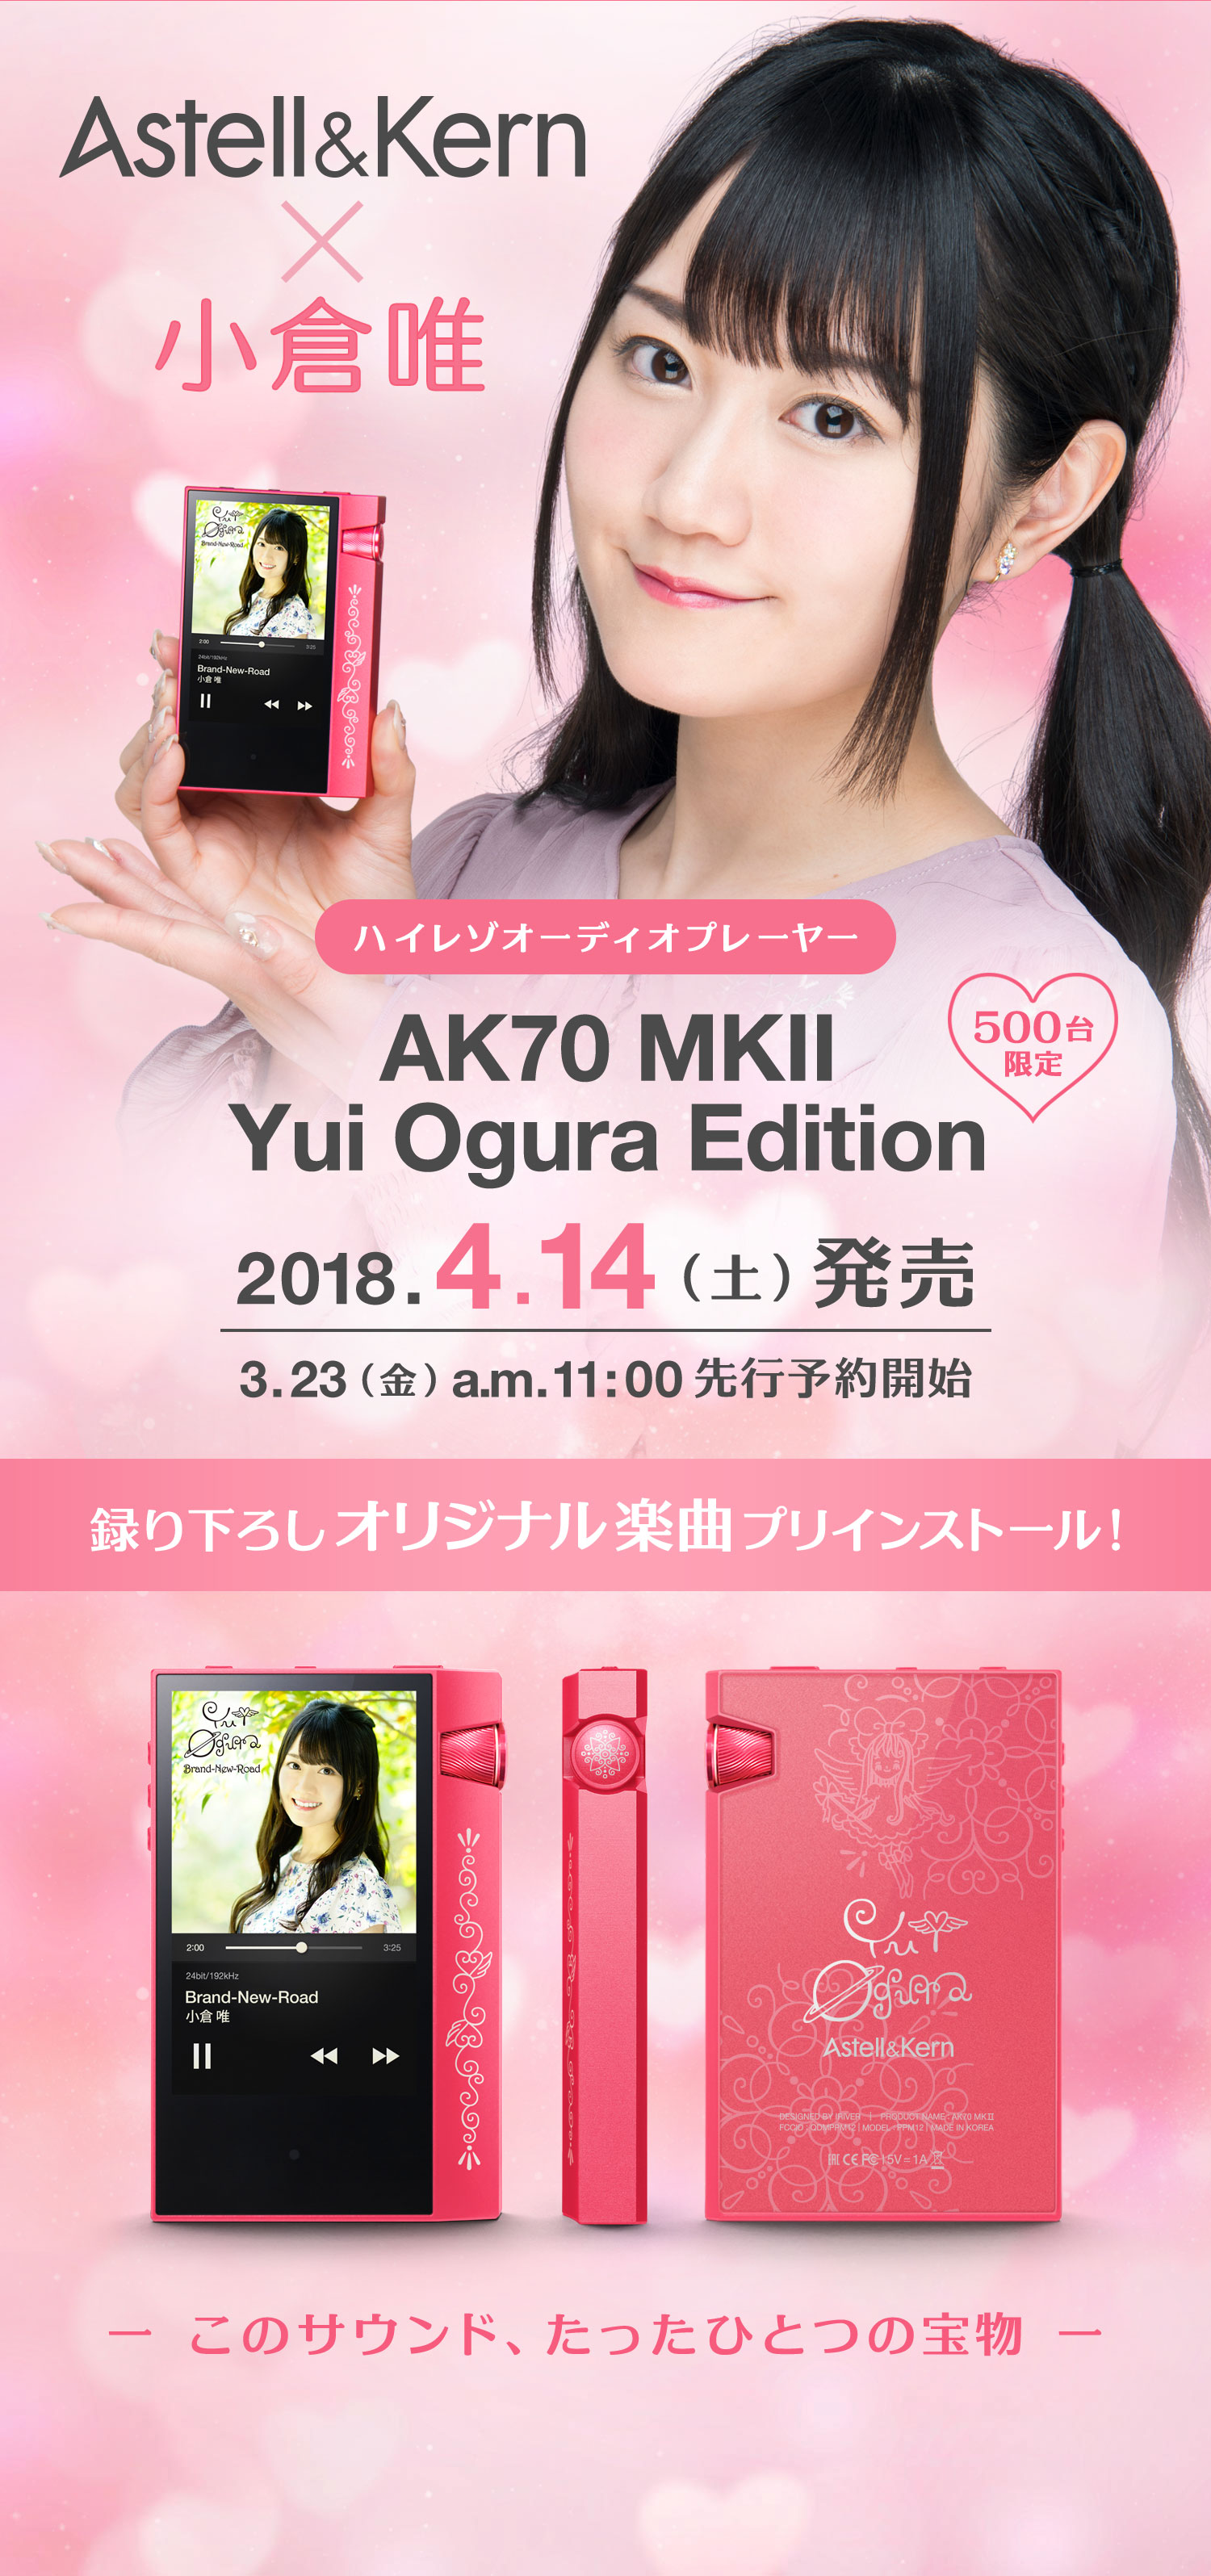 送料無料価格 AK70 Astell&Kern MKII Edition Ogura Yui ポータブルプレーヤー